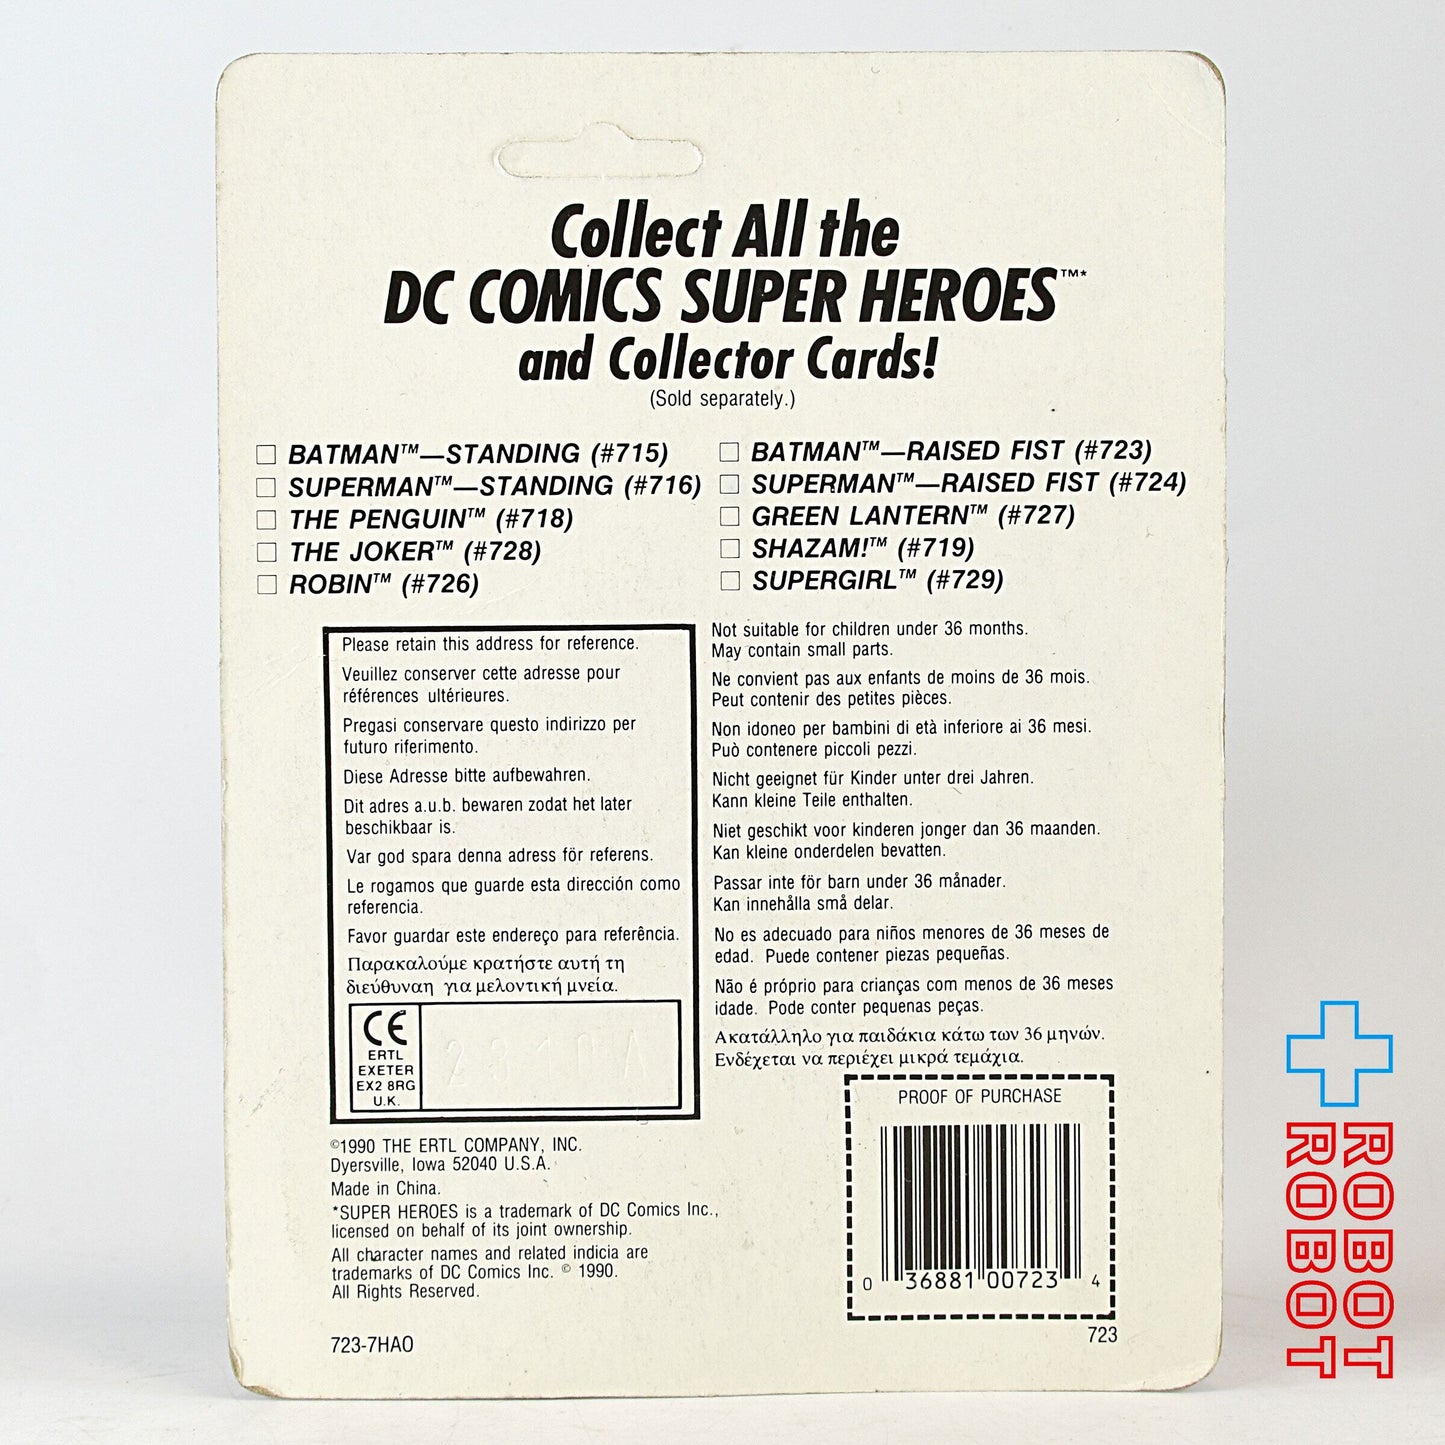 ERTL DCコミックス スーパーヒーローズ バットマン ダイキャストメタル